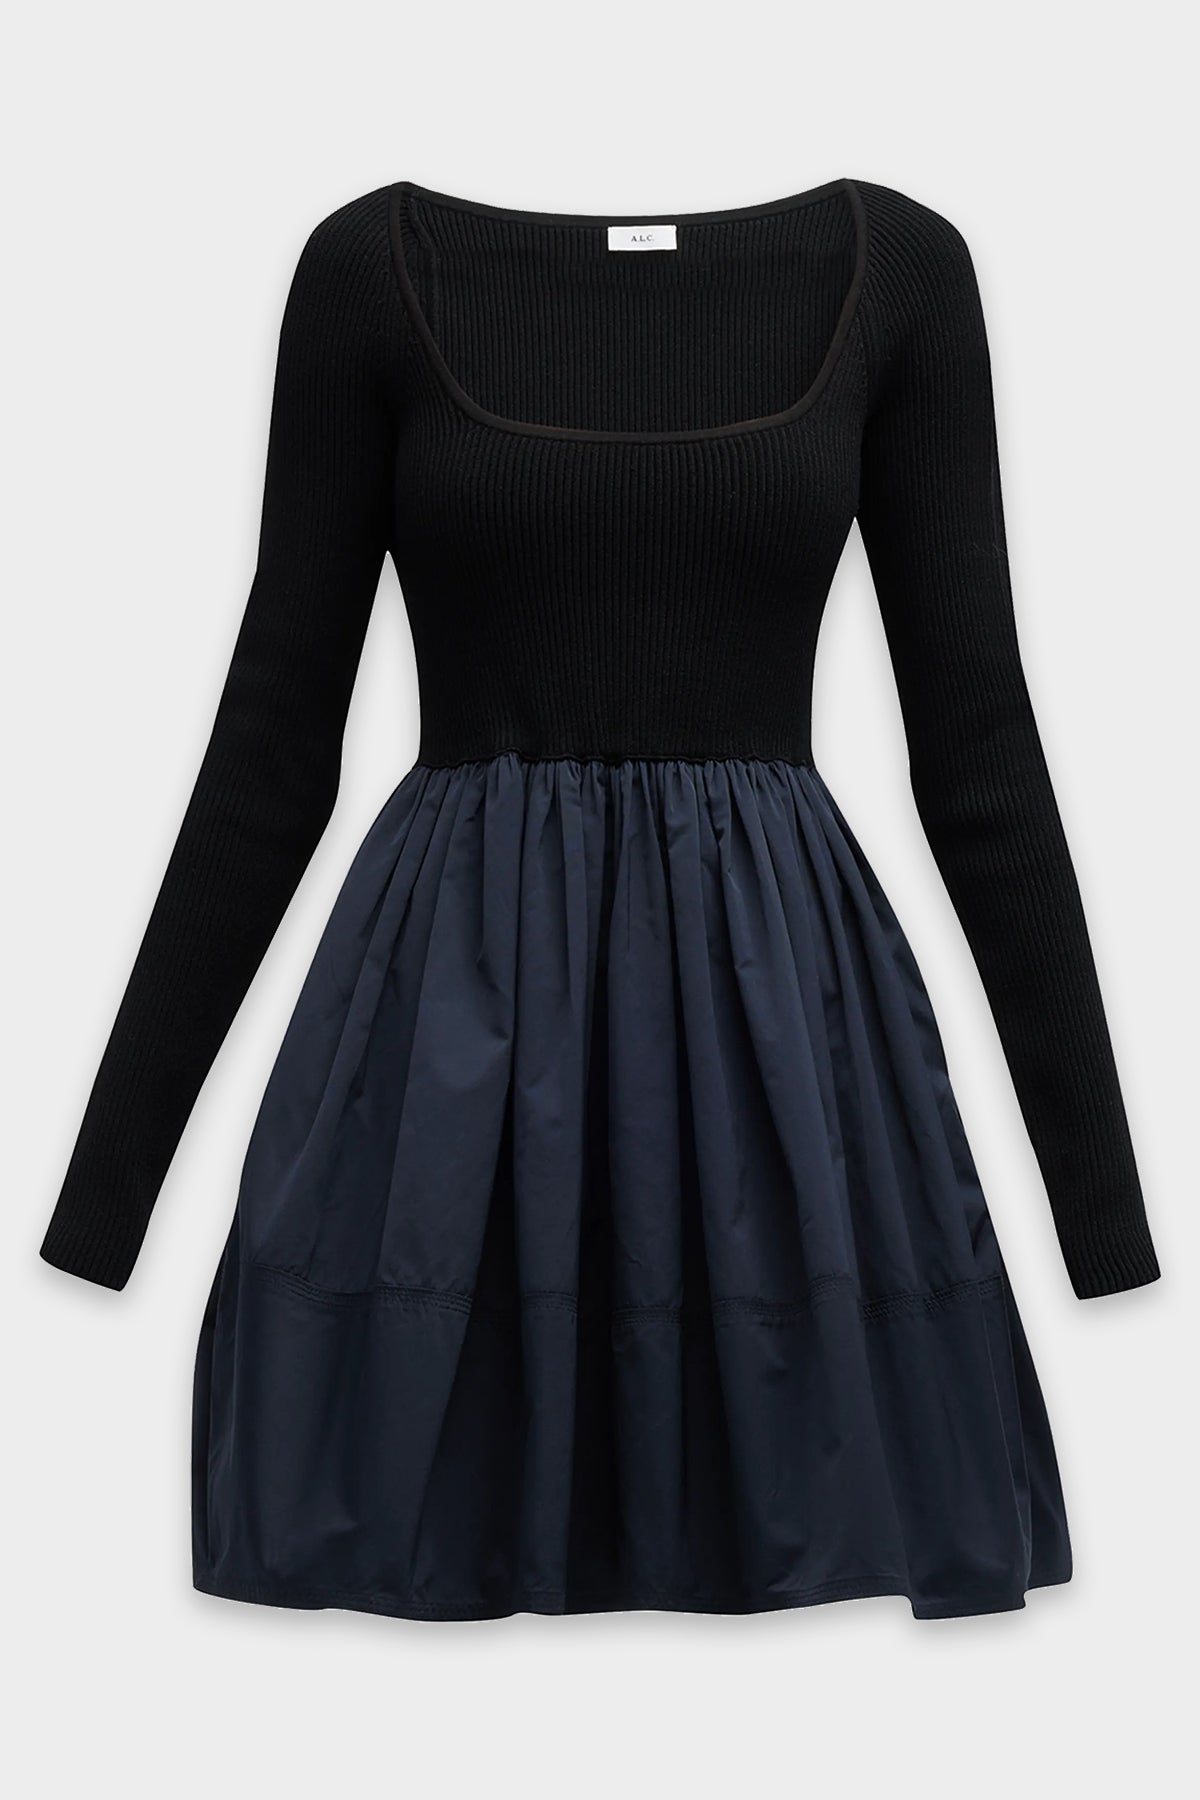 Maddie Mini Dress in Black Navy - shop-olivia.com